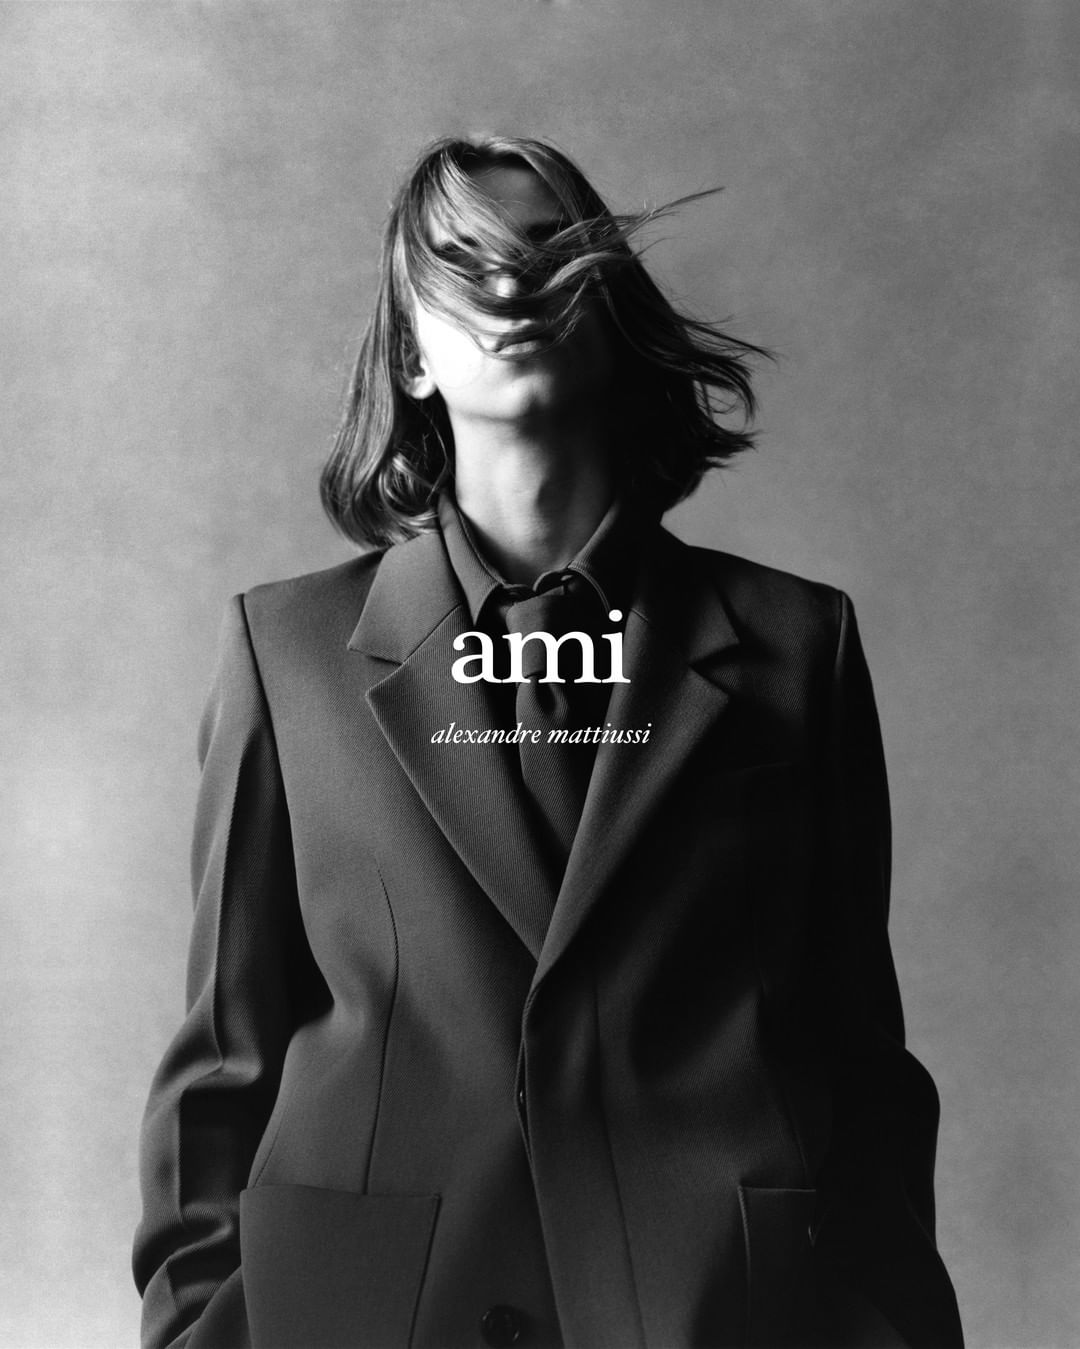 法国设计师品牌 Ami 携手法国时装学院 IFM 推出 Ami X IFM 创业大奖